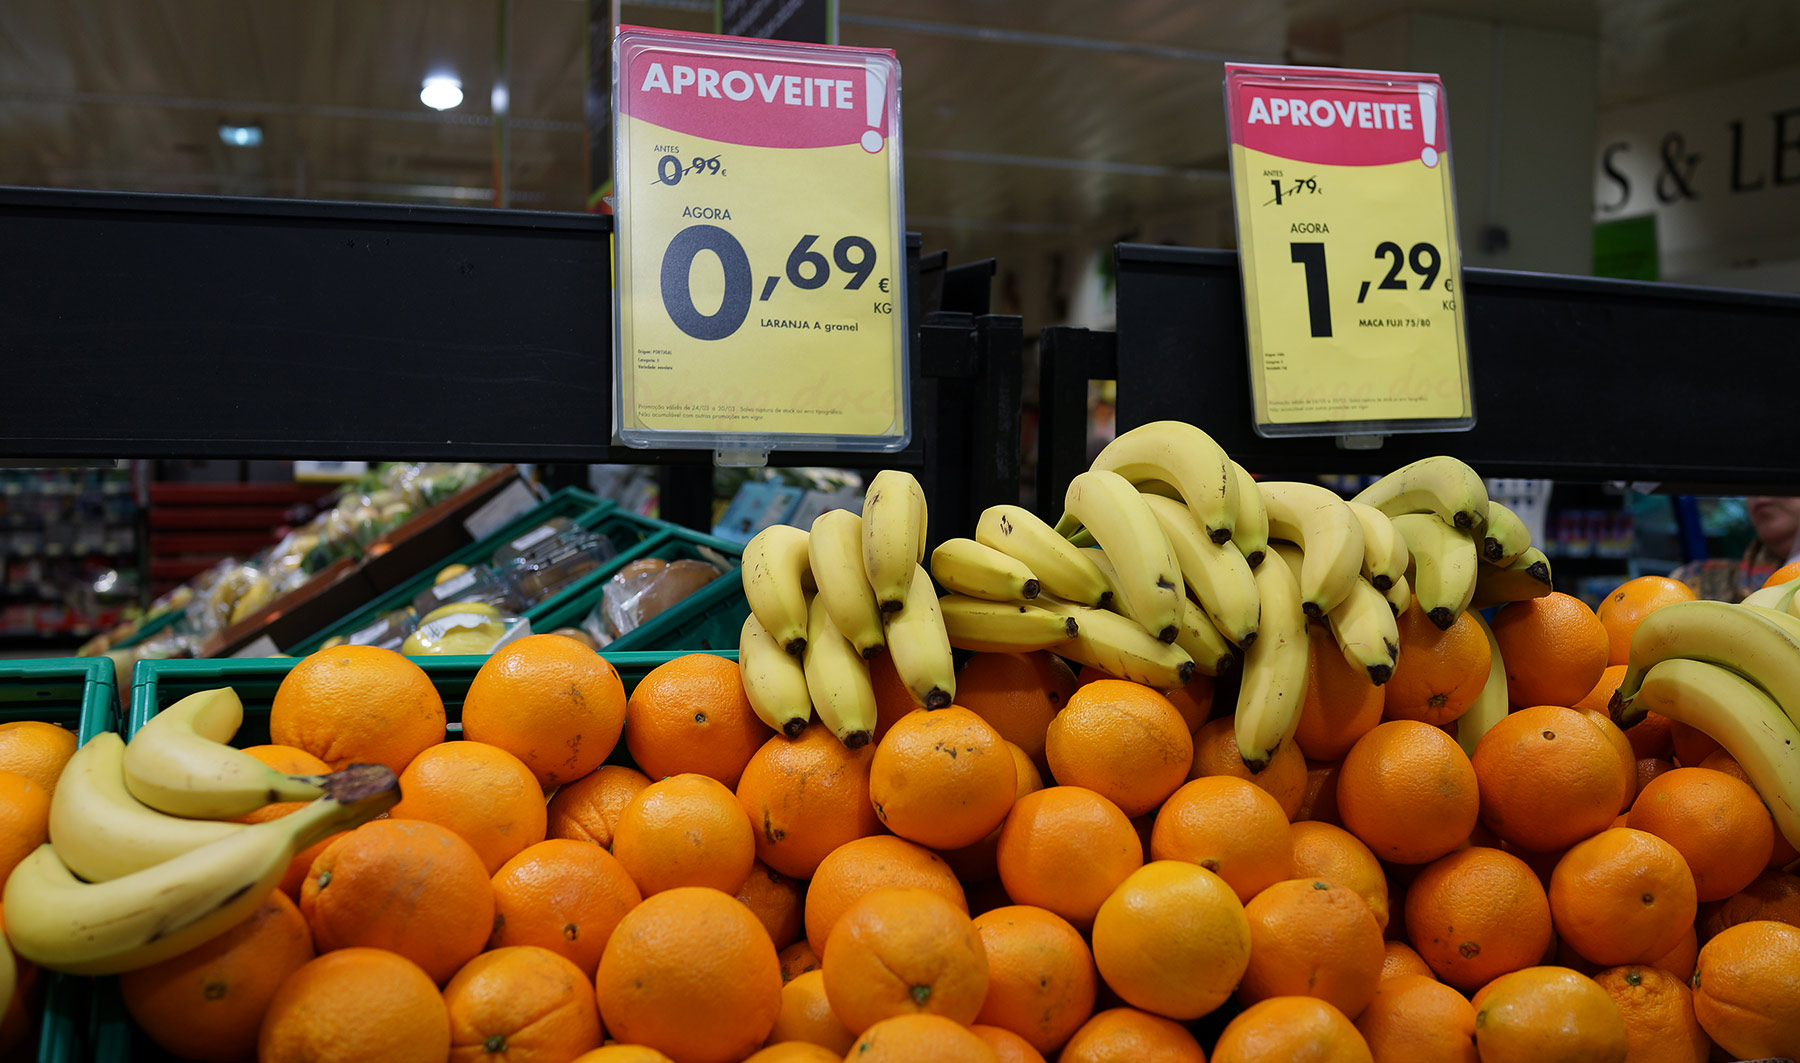 Цены в португальском супермаркете. Насколько выше/ниже российских? DSC02579